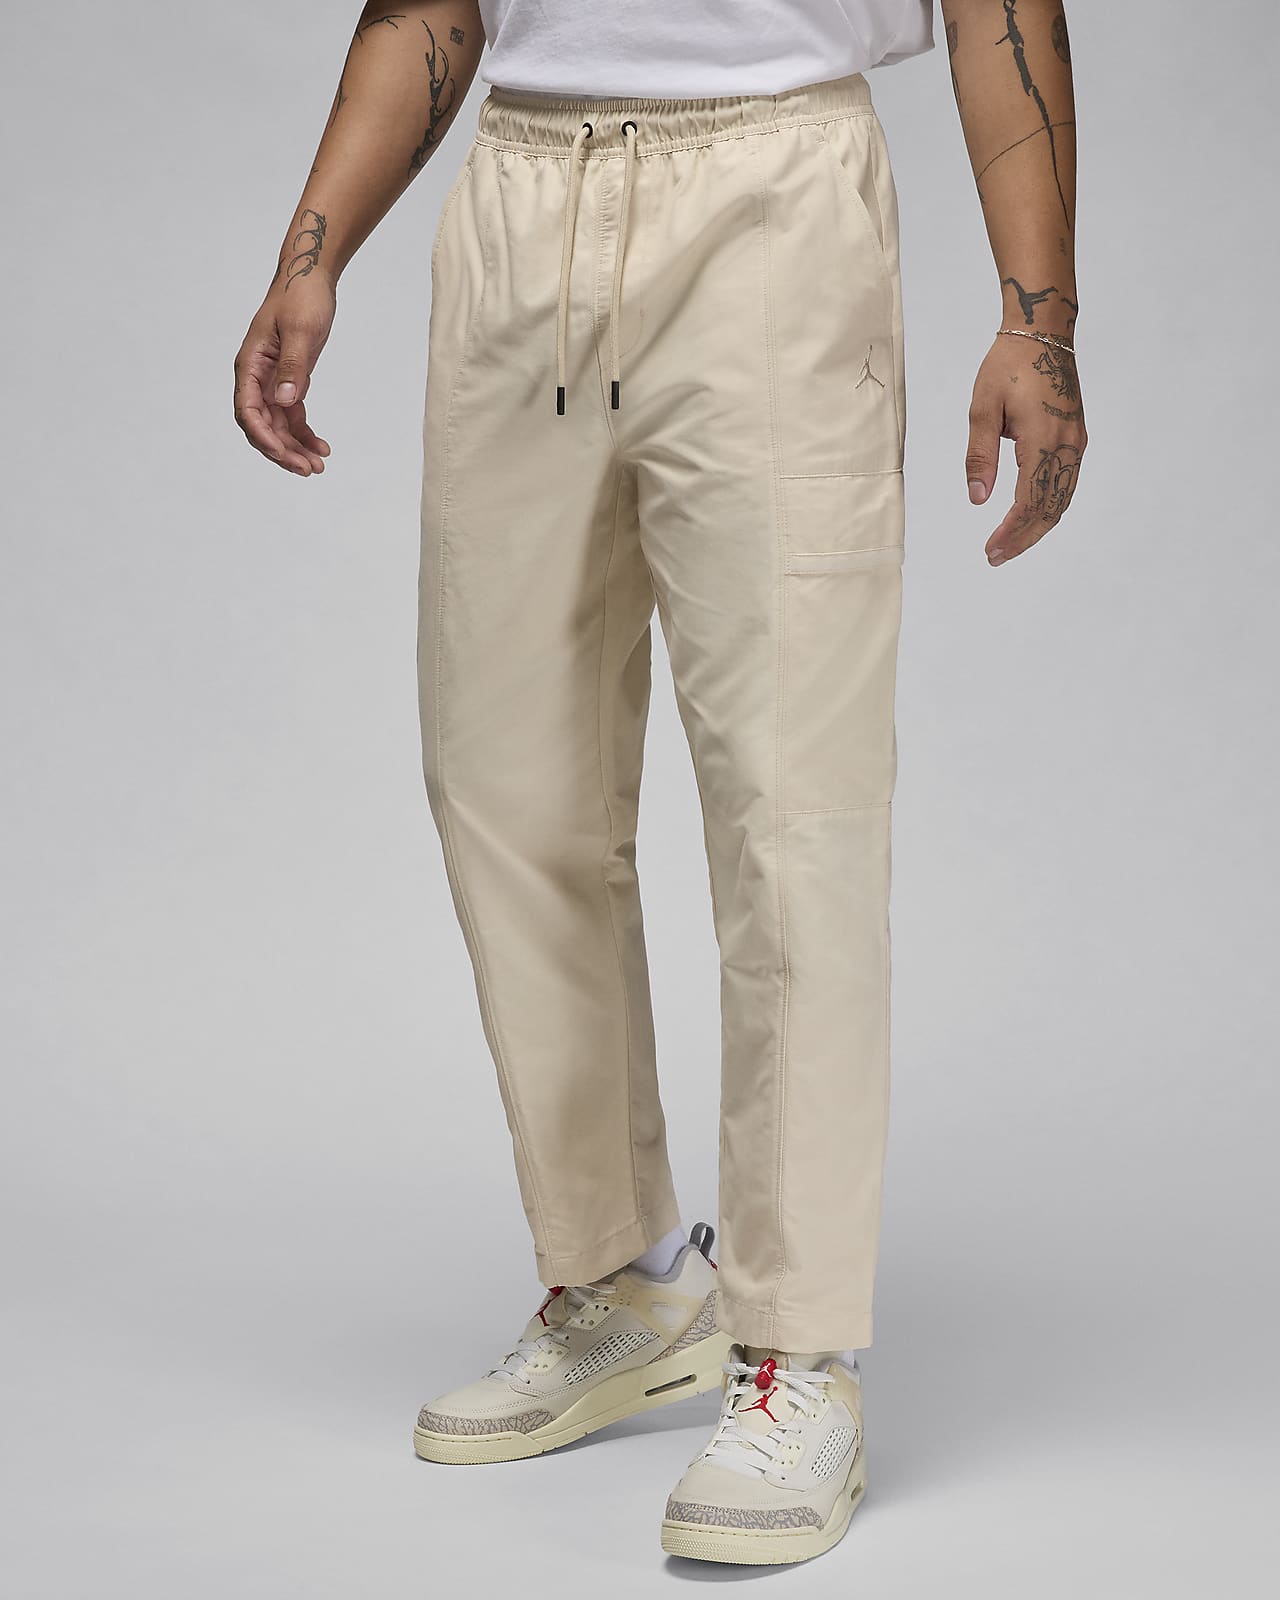 Pants de tejido Woven para hombre Jordan Essentials